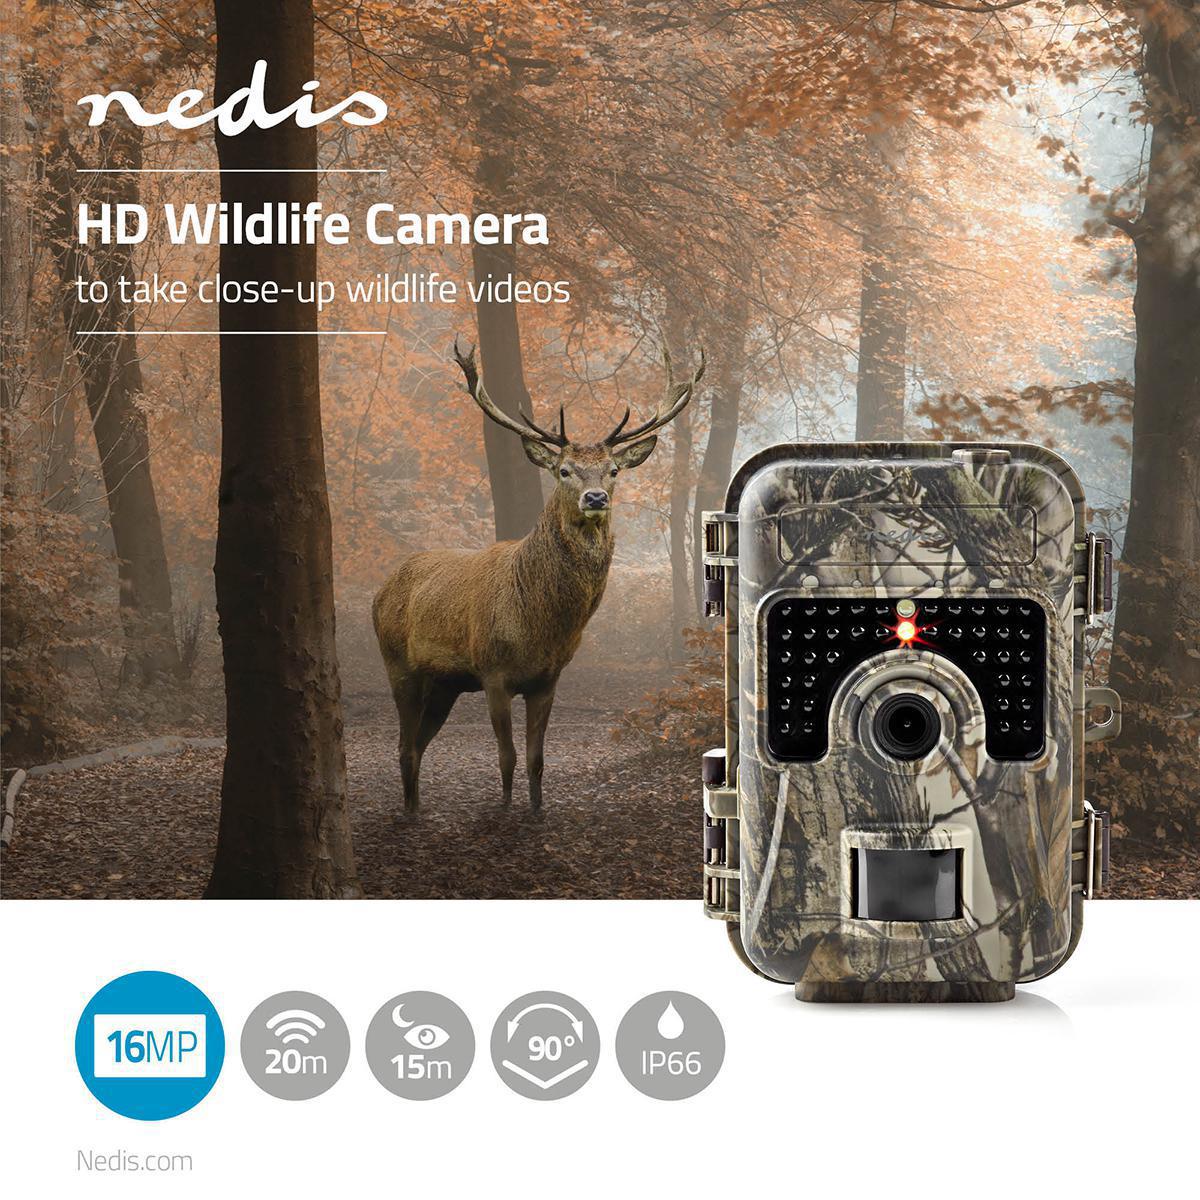 Caméra camouflage haute définition - 1080p@30fps | 16.0 mpixel | 3 mp color cmos | ip66 vision nocturne